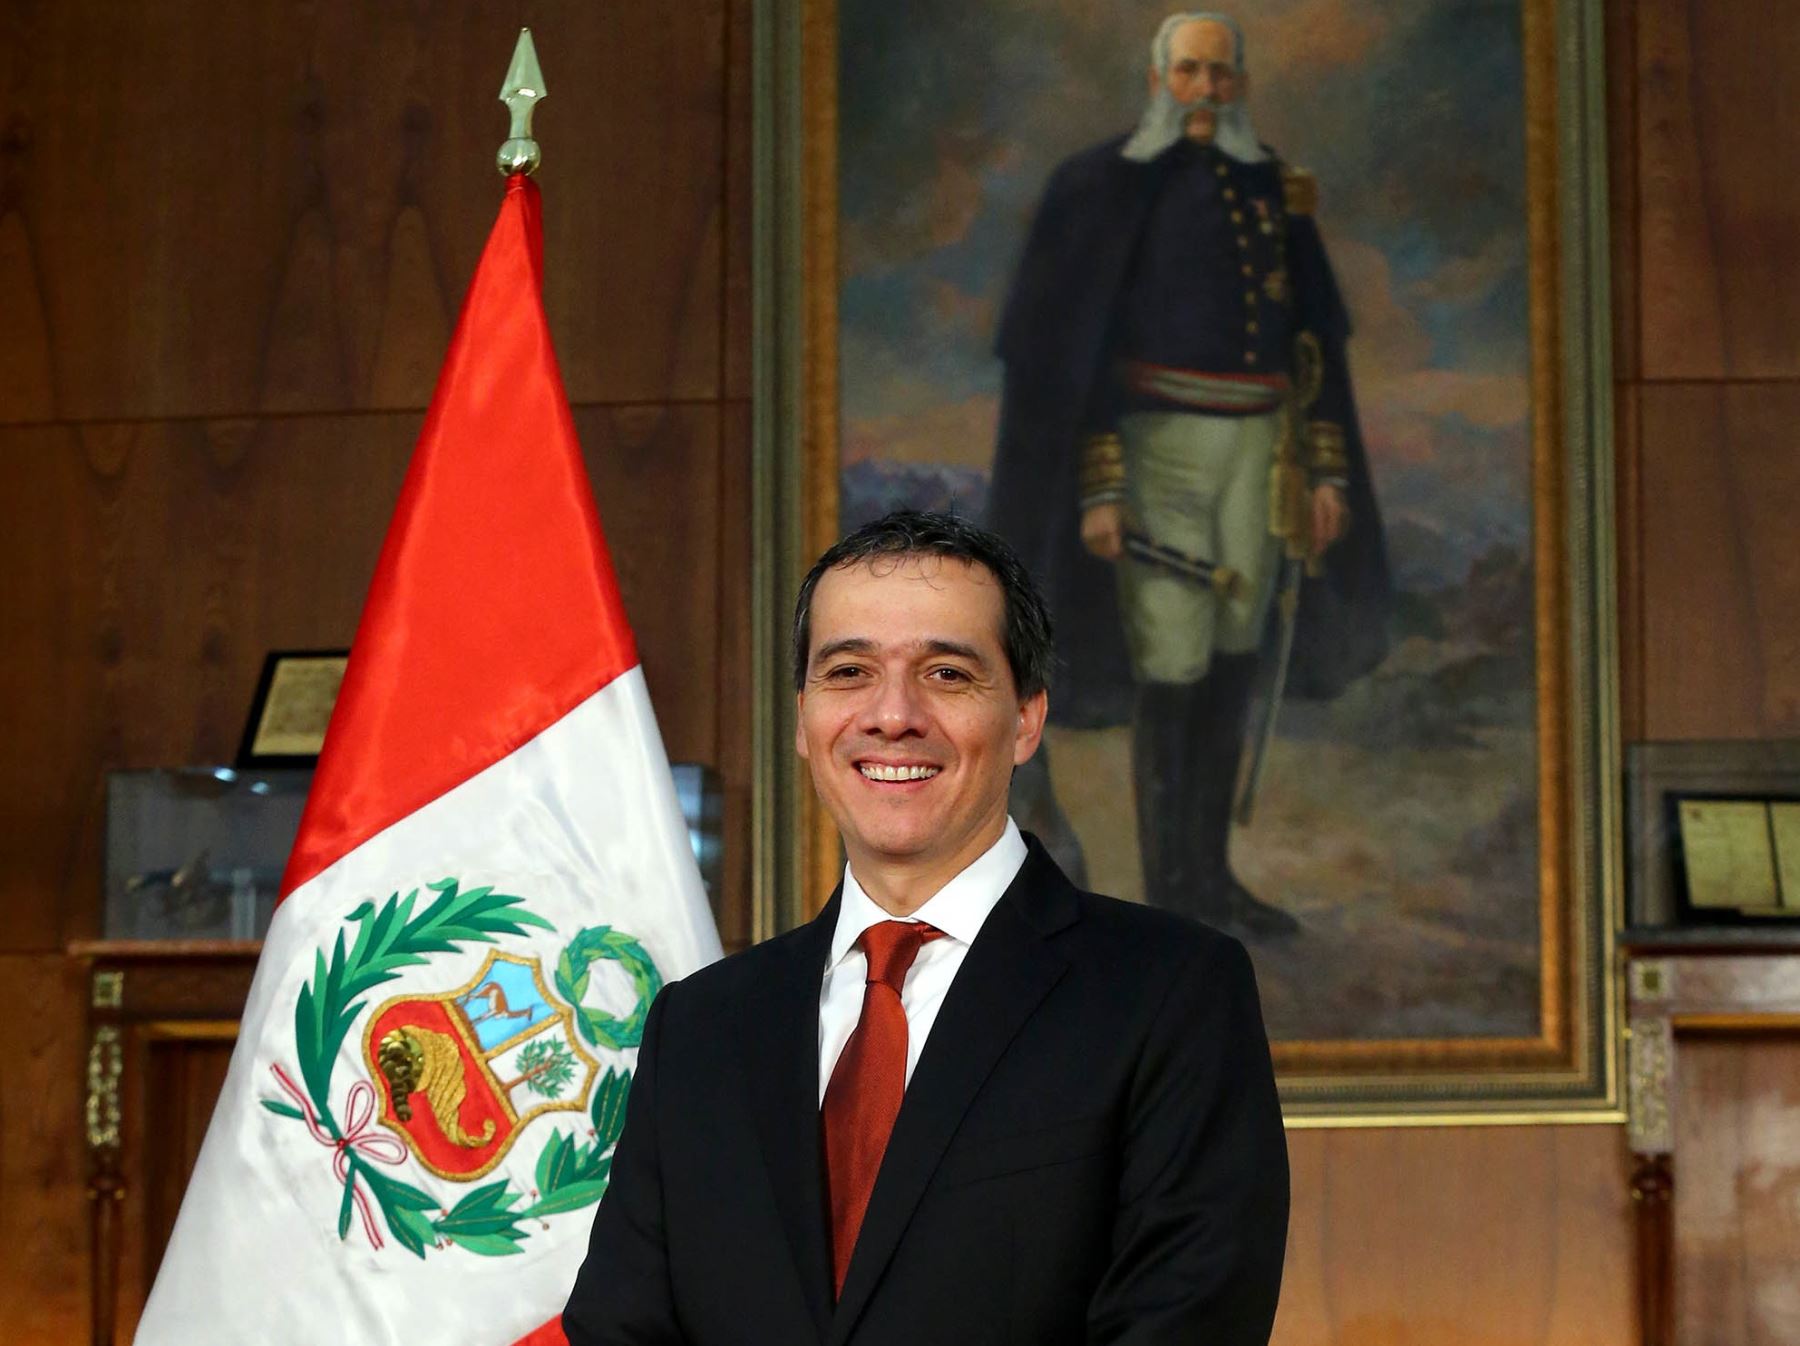 El Presidente de la República, Ollanta Humala Tasso, tomó juramento al nuevo ministro de Economía y Finanzas, Alonso Segura.Foto: ANDINA/Prensa Presidencia